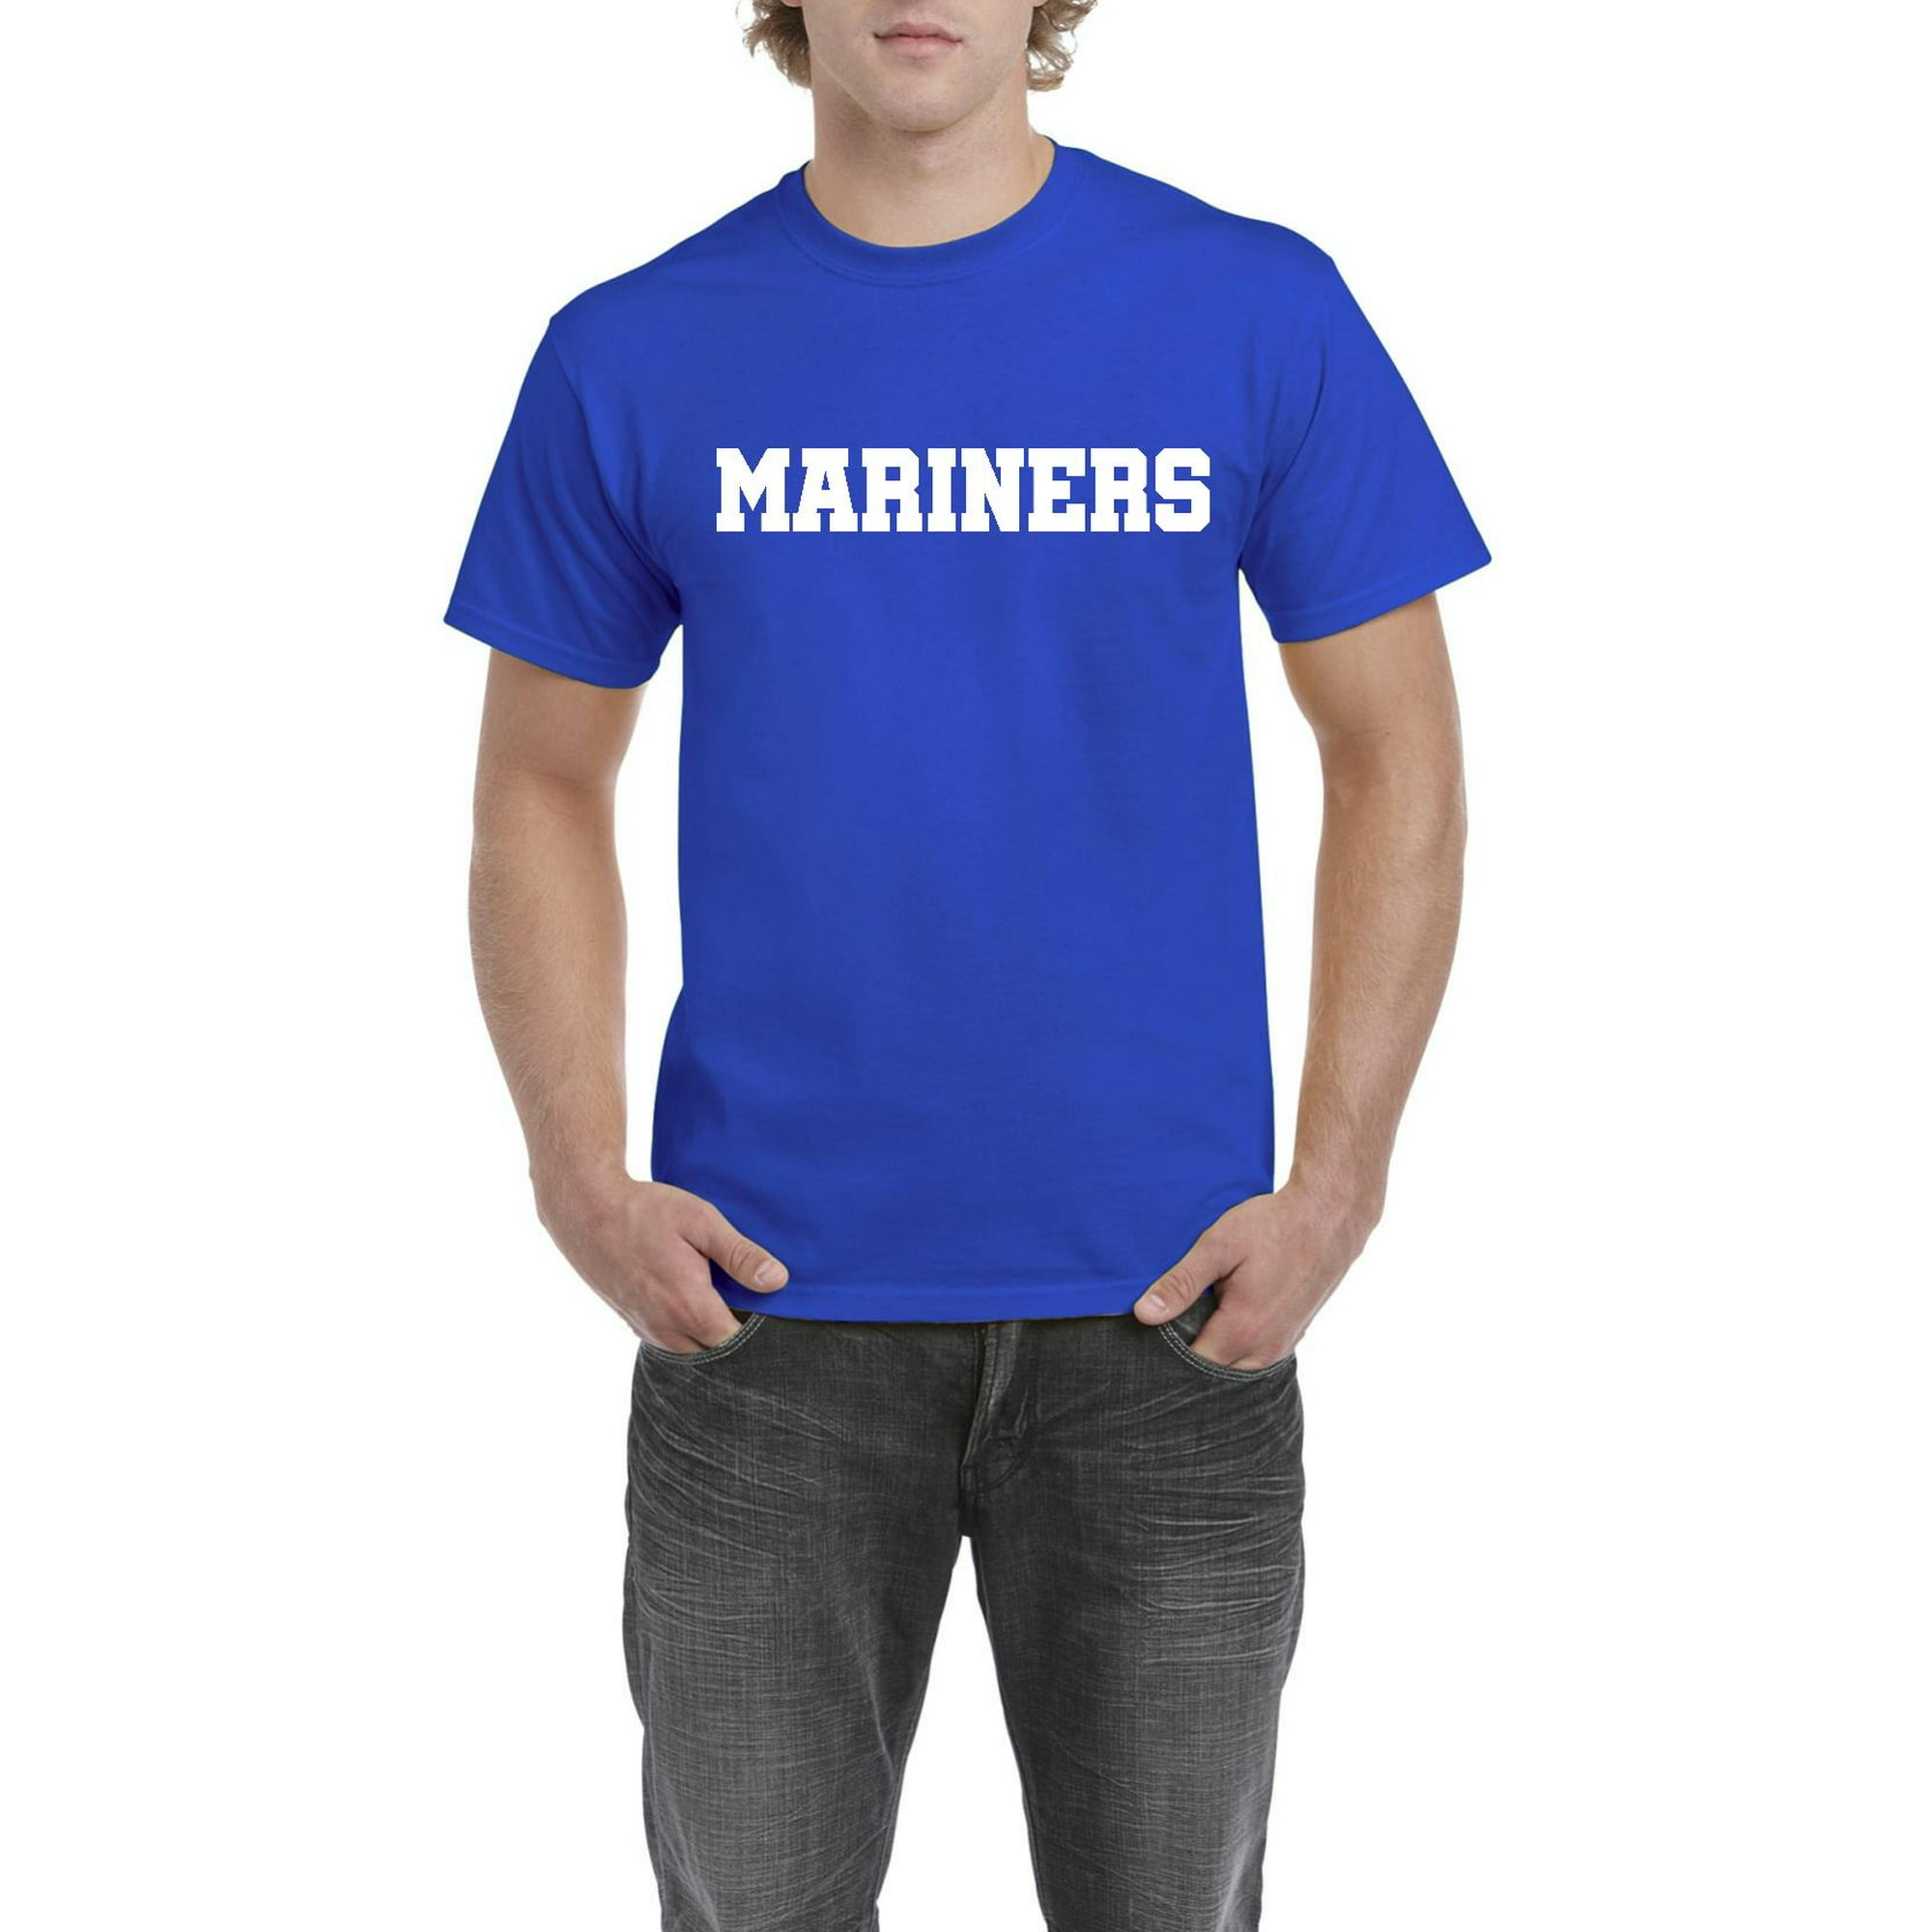 men's mariners shirt